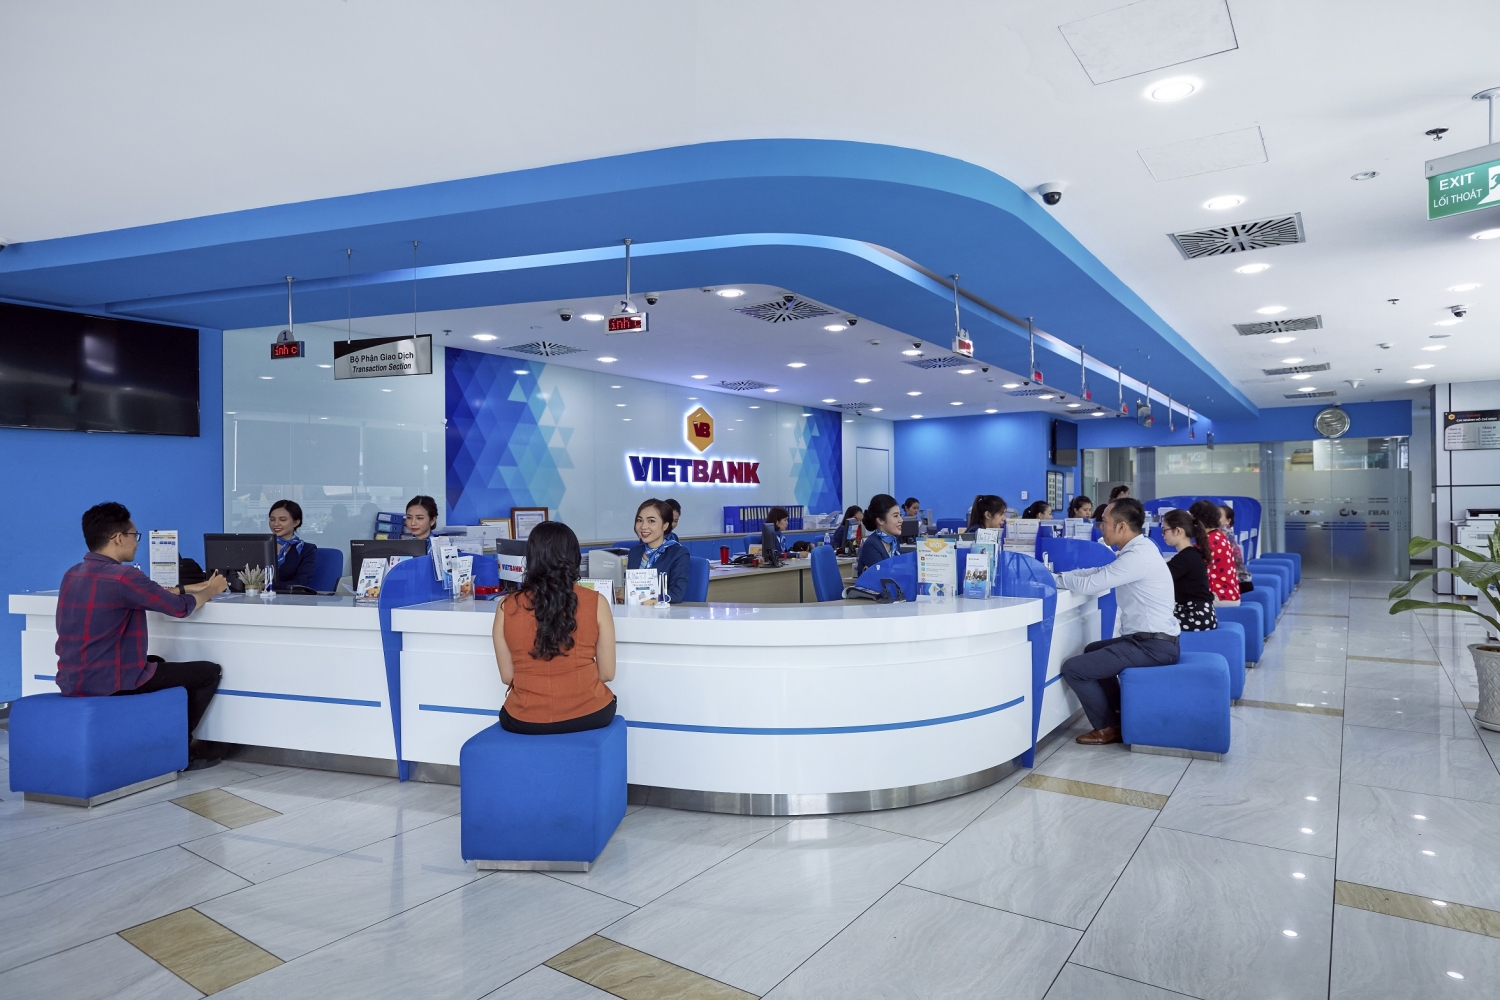 Tin ngân hàng ngày 3/4: Sau kiểm toán, lợi nhuận của Vietbank tăng lên 656 tỷ đồng